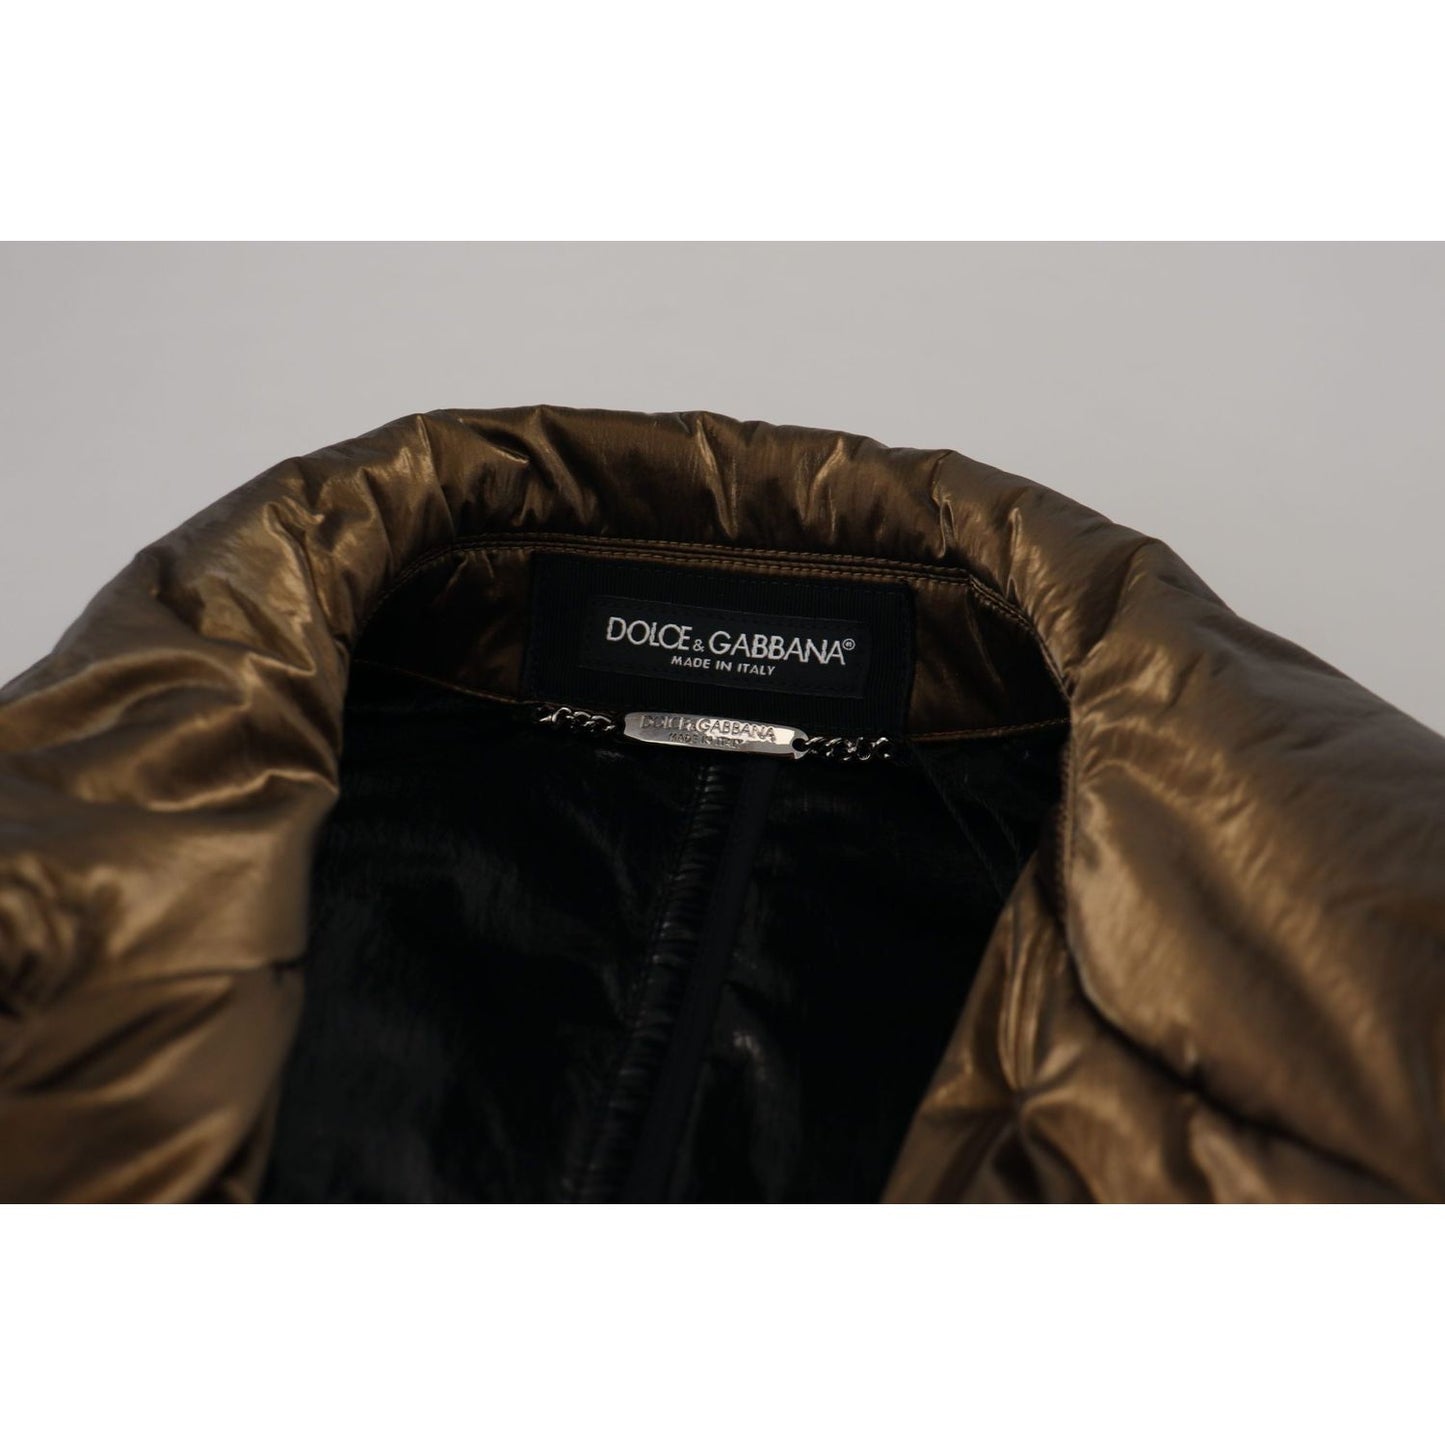 Dolce & Gabbana Elegant Bronze Double-Breasted Jacket bronze-nylon-collar-double-breasted-jacket IMG_8654-scaled-04f7fb41-774.jpg